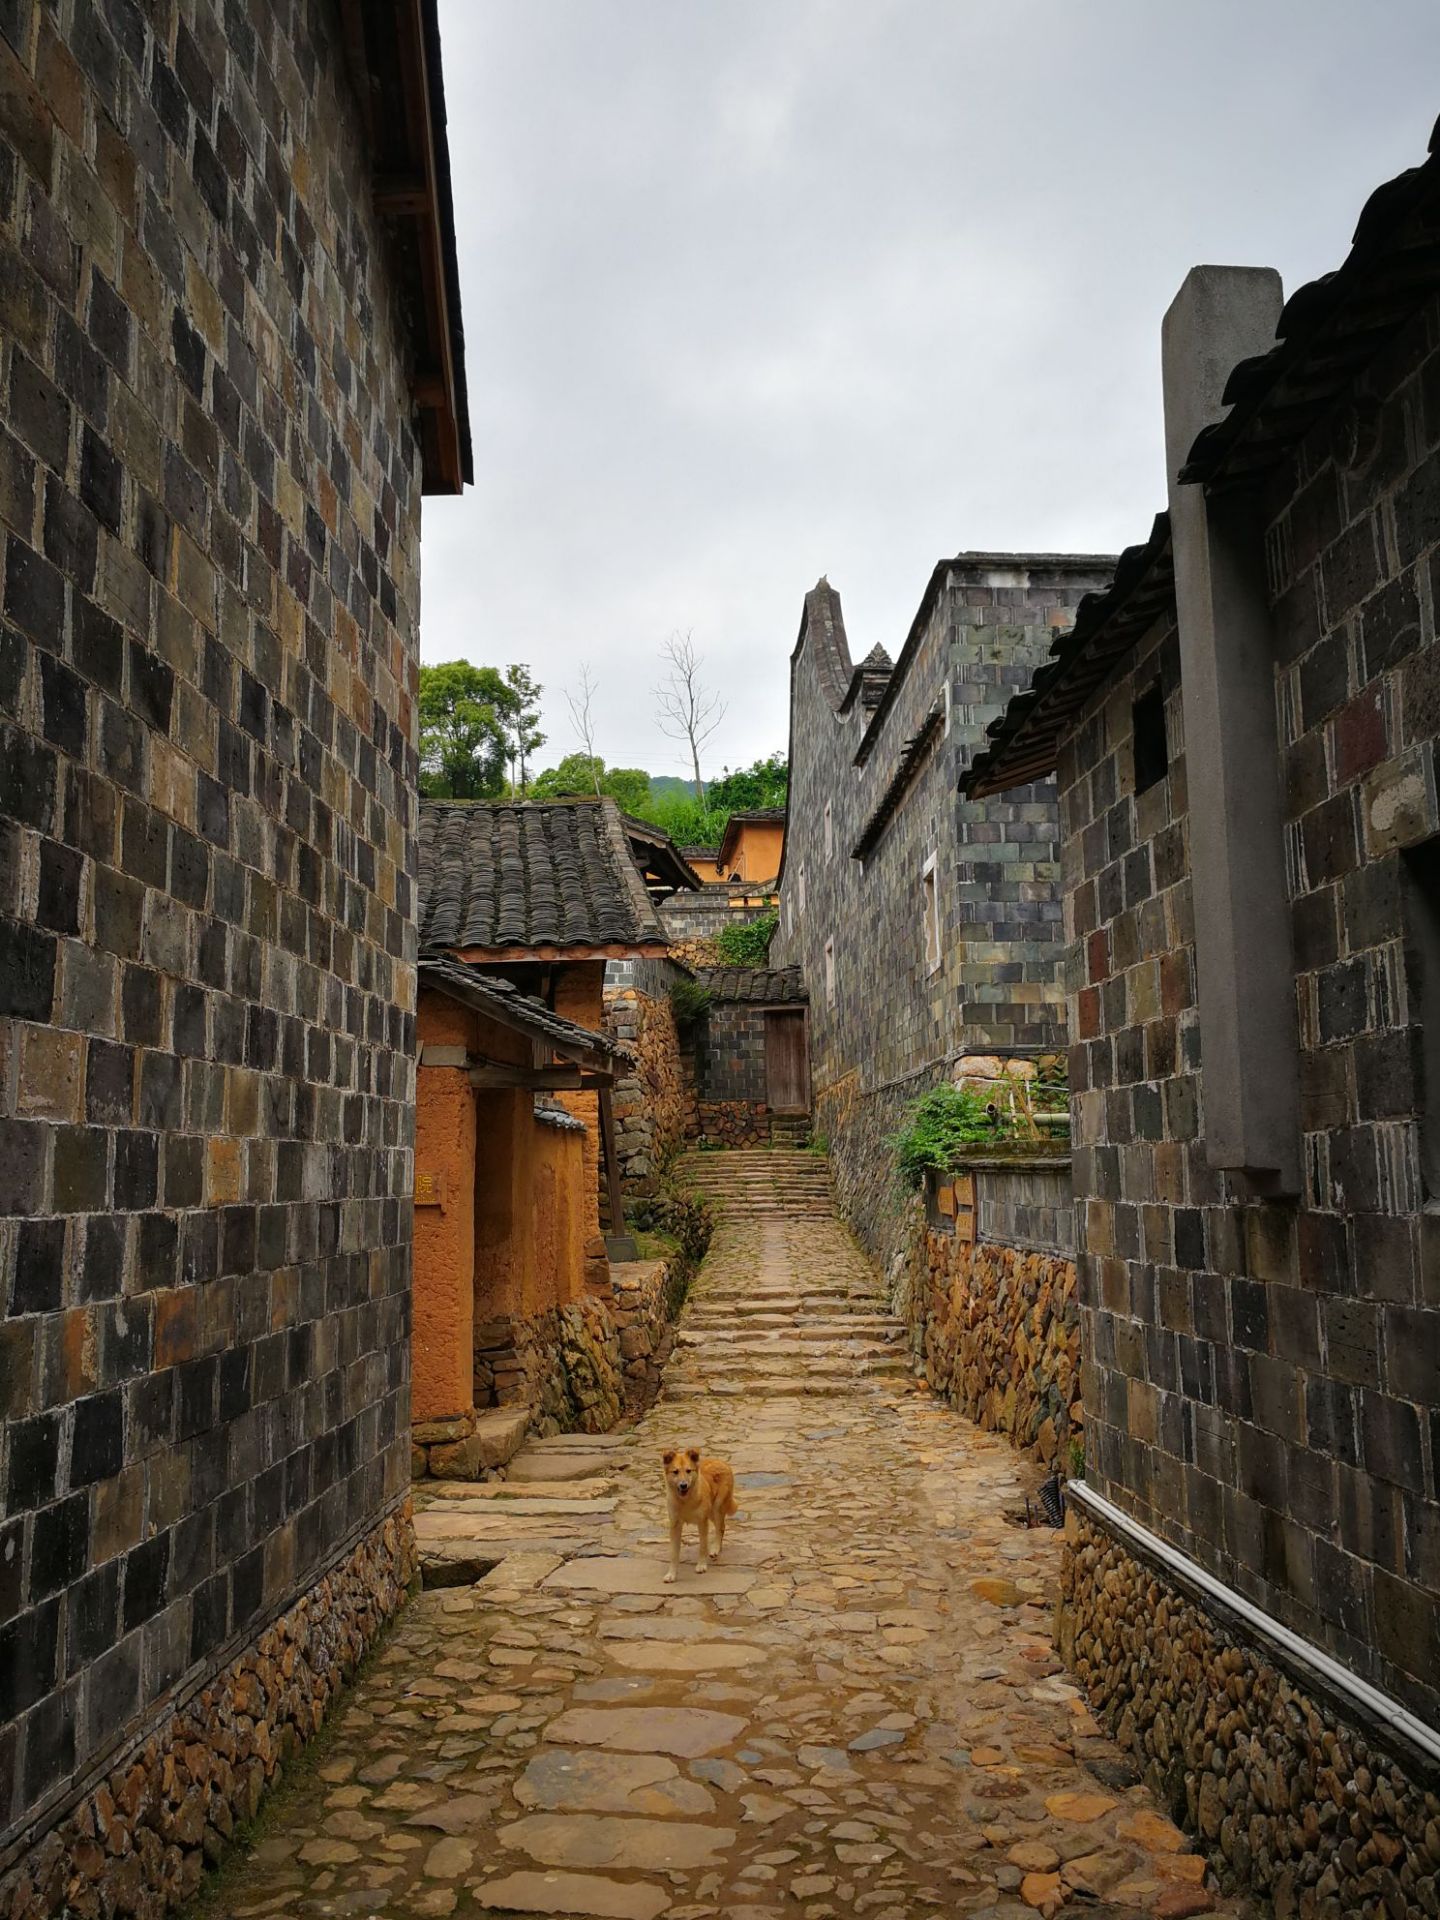 半月里村位于福建省霞浦县溪南镇,是畲族聚居的村庄